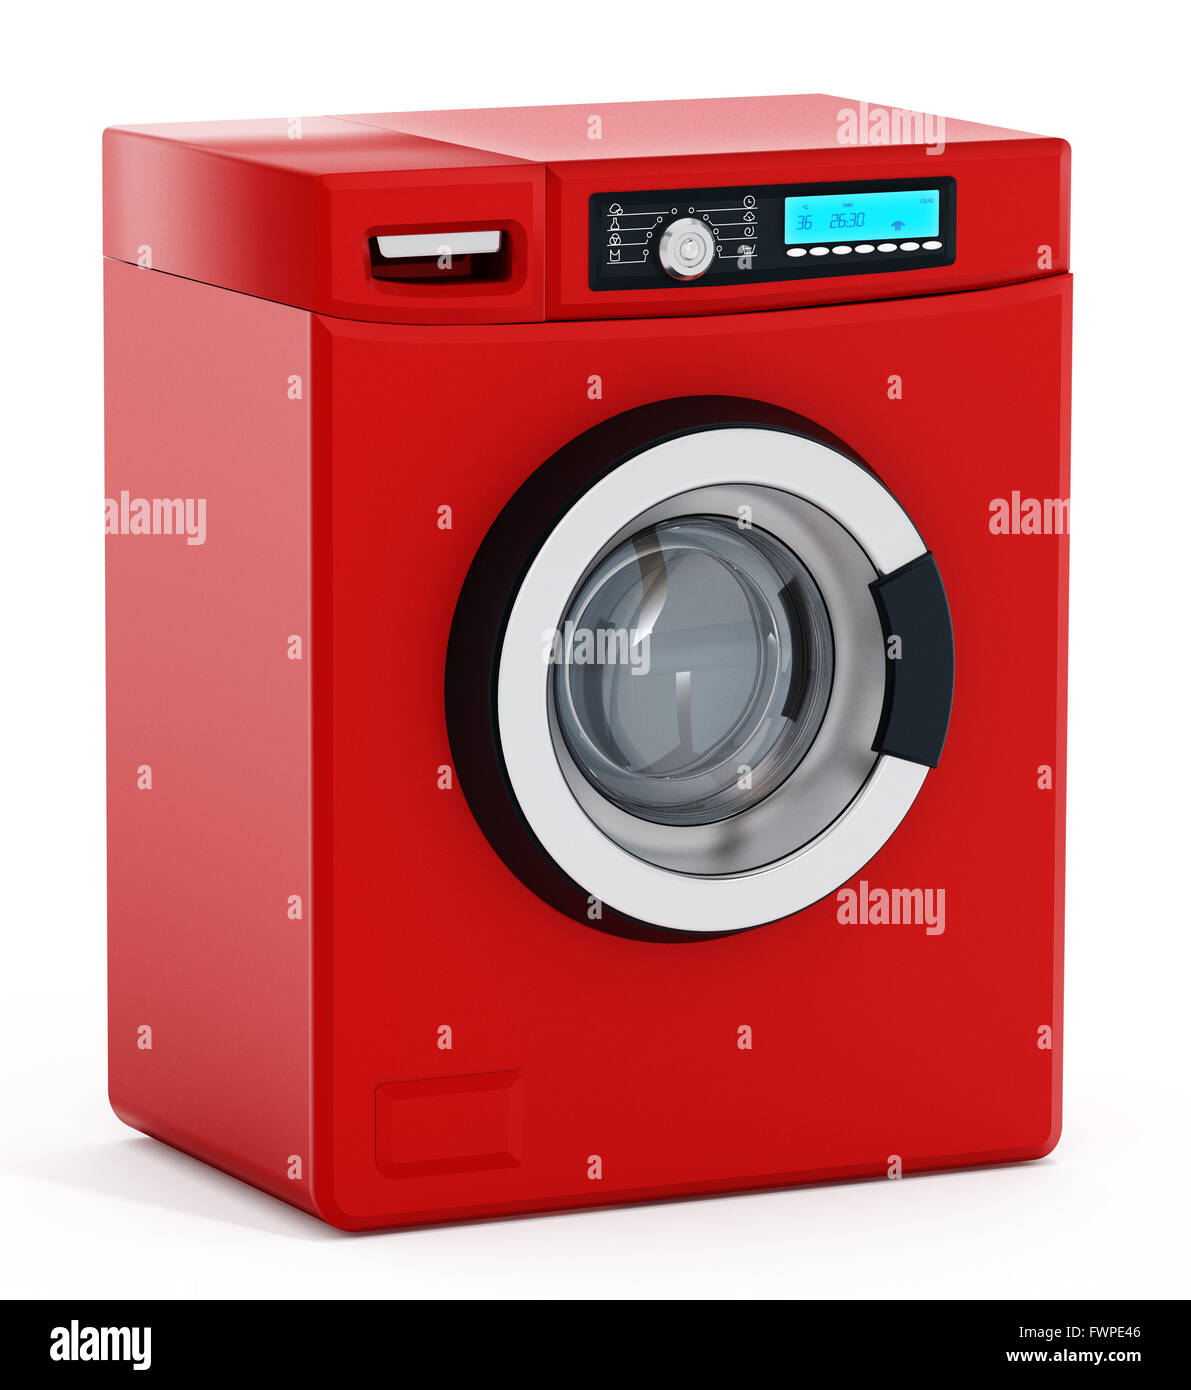 Rosso la macchina di lavaggio con display digitale isolato su sfondo bianco Foto Stock